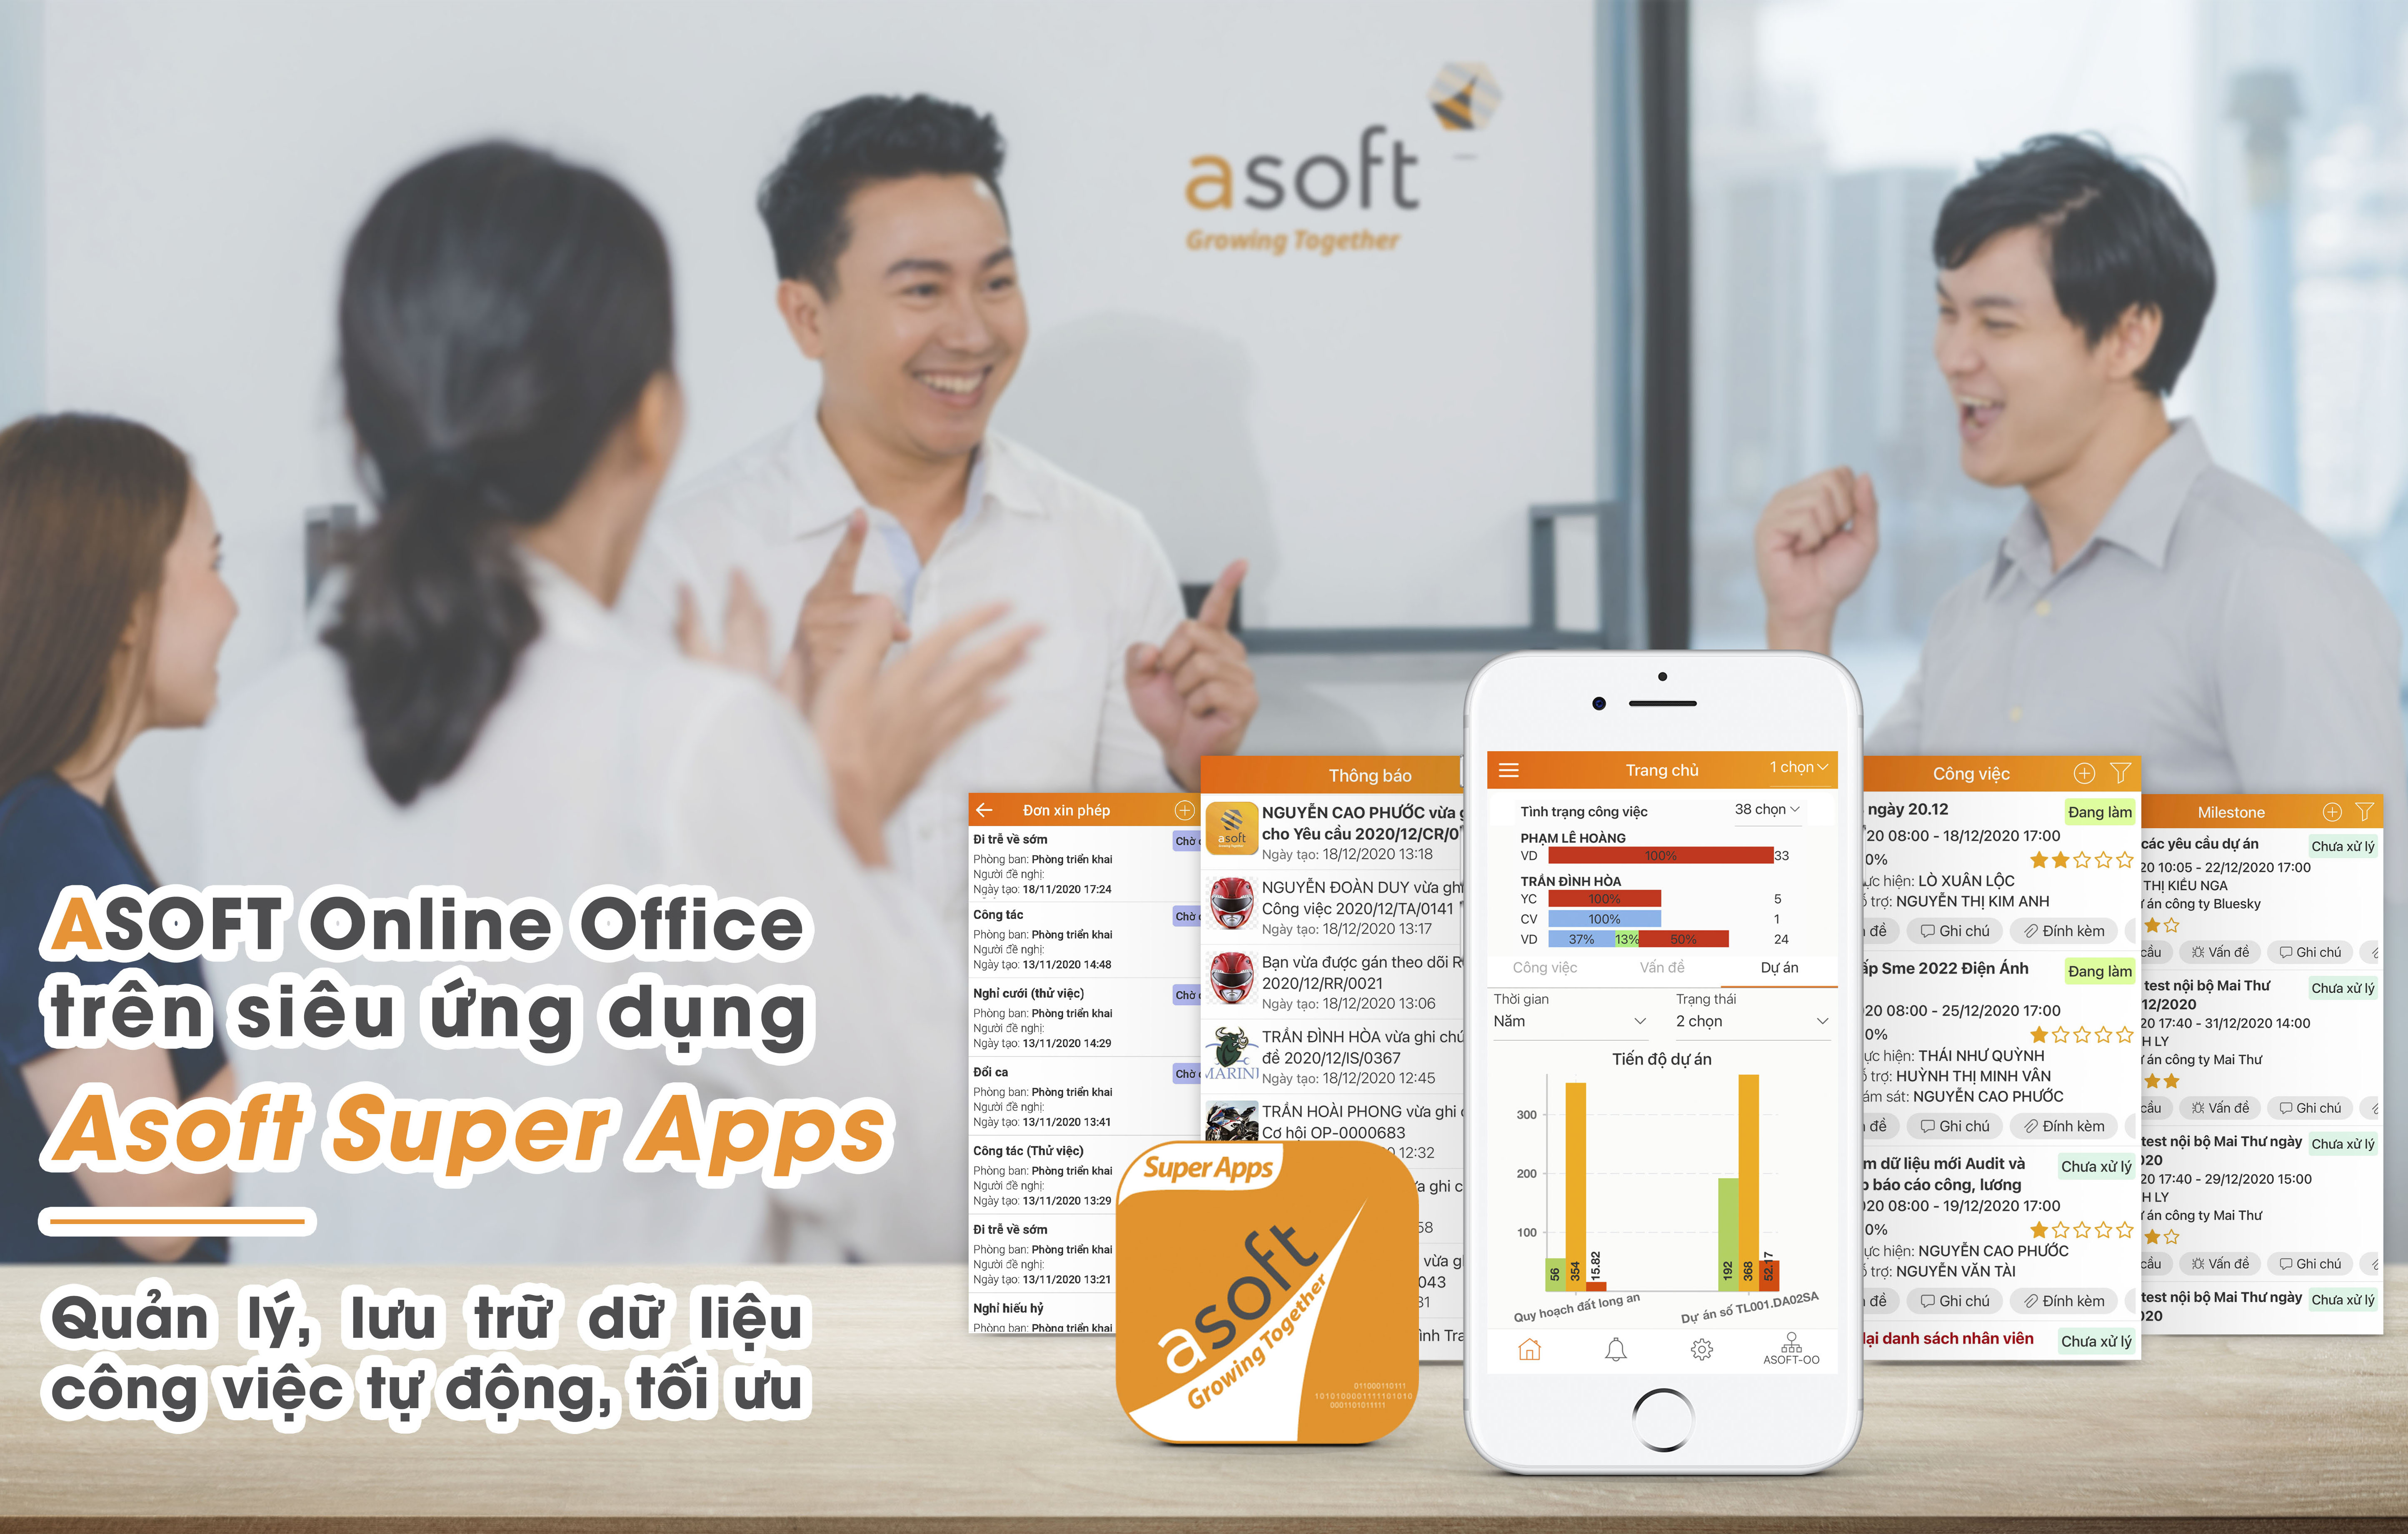 Giới thiệu Asoft Super Apps – Siêu ứng dụng tiện lợi và mạnh mẽ – quản trị doanh nghiệp ...